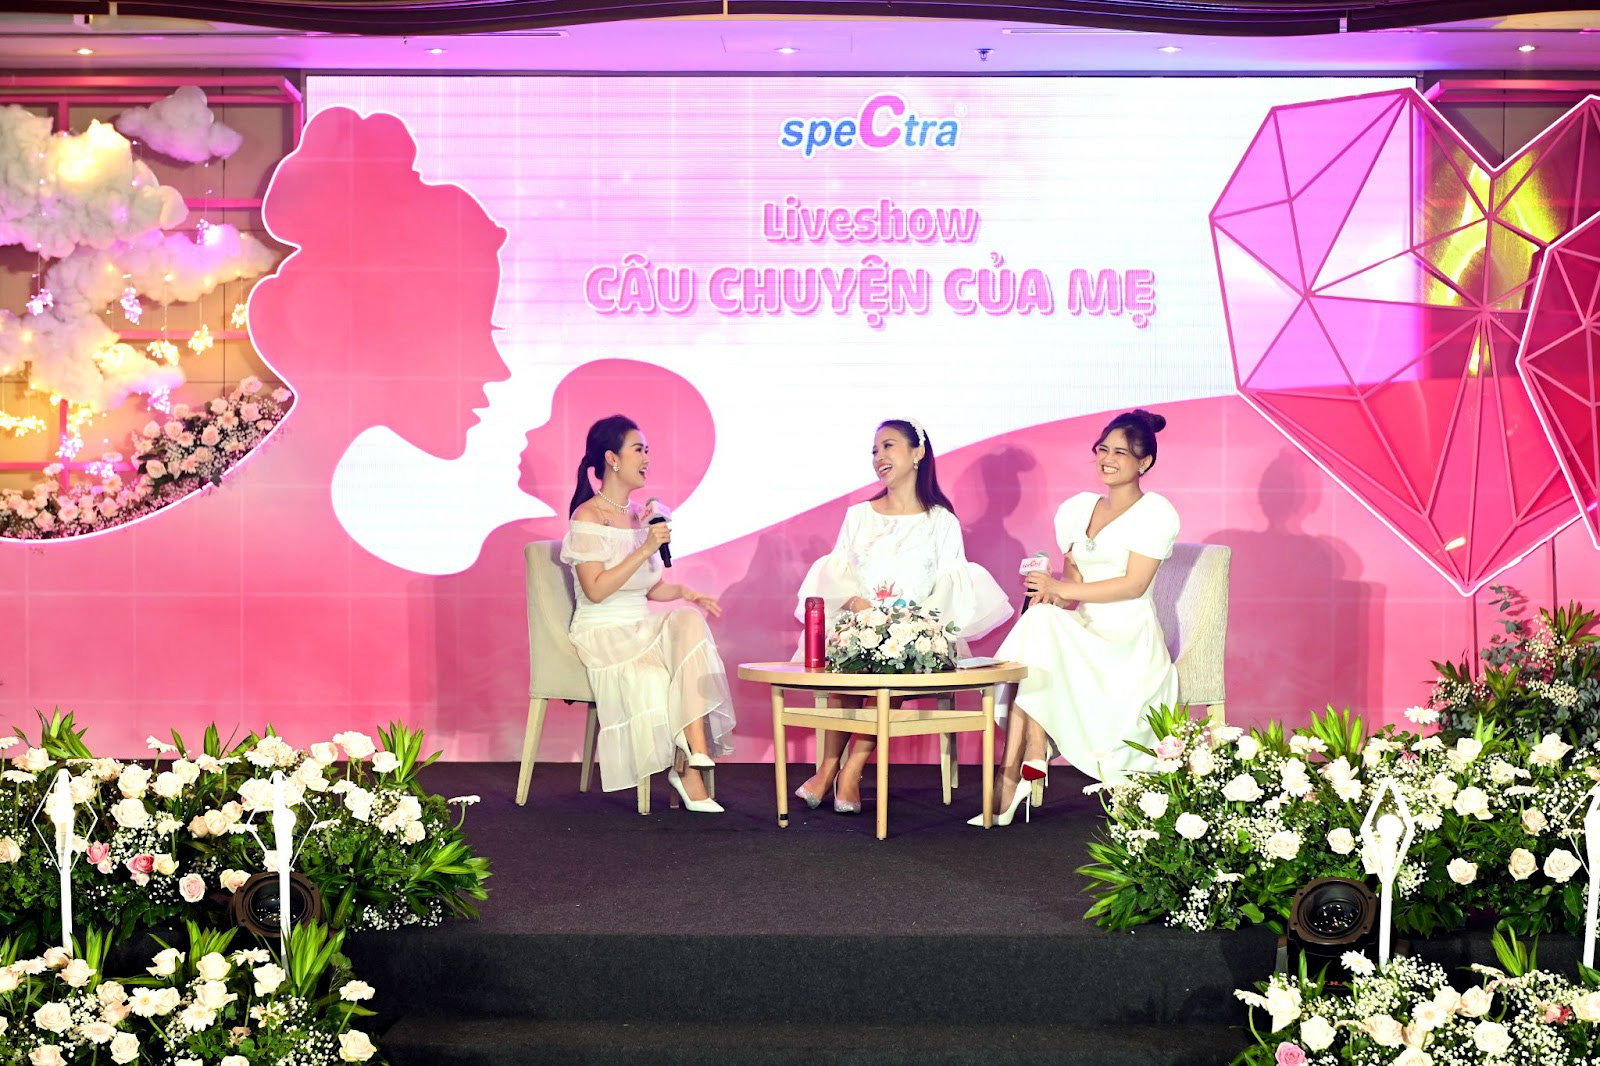 Spectra Việt Nam chính thức giới thiệu bài hát “Câu chuyện của mẹ” dành tặng cho các mẹ bỉm sữa nhân dịp xuân Nhâm Dần 2022 - Ảnh 1.